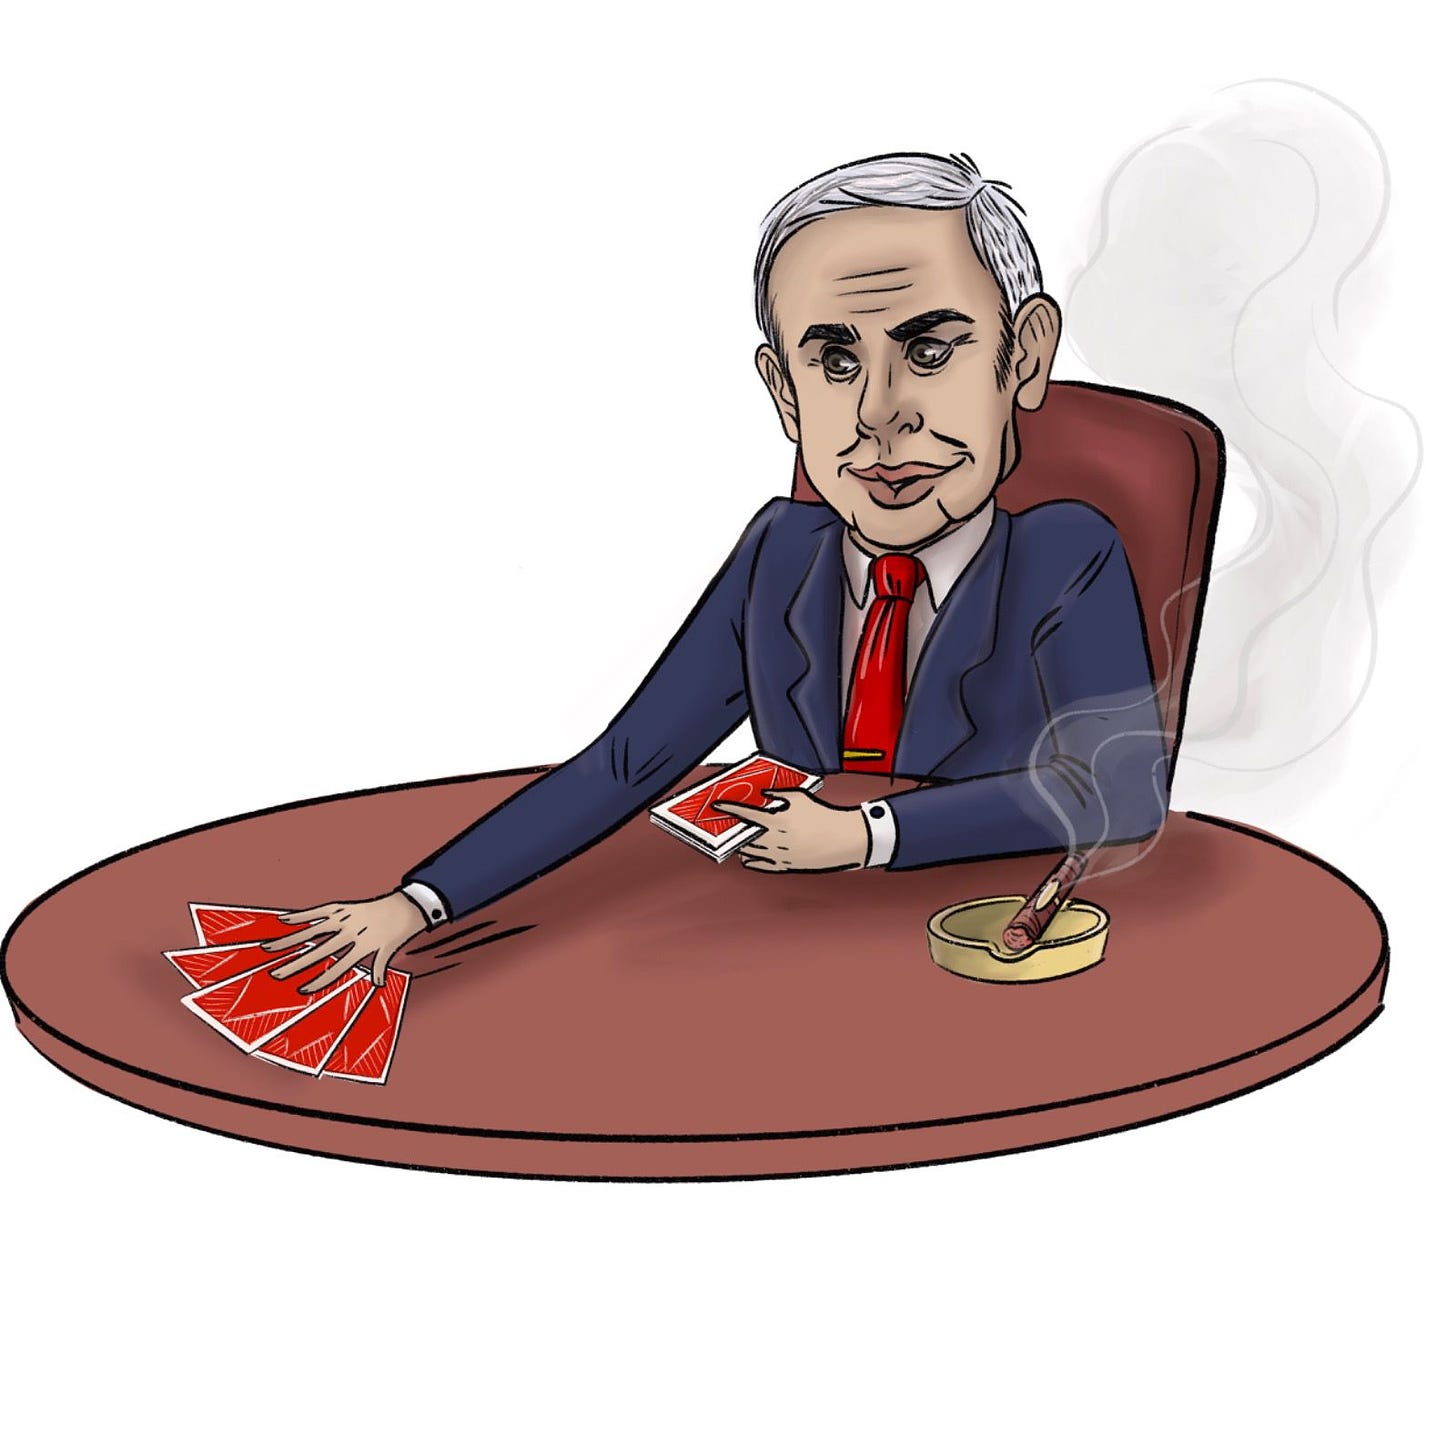 Jokers are Wild: Can Netanyahu Deal Himself a Winning Hand?